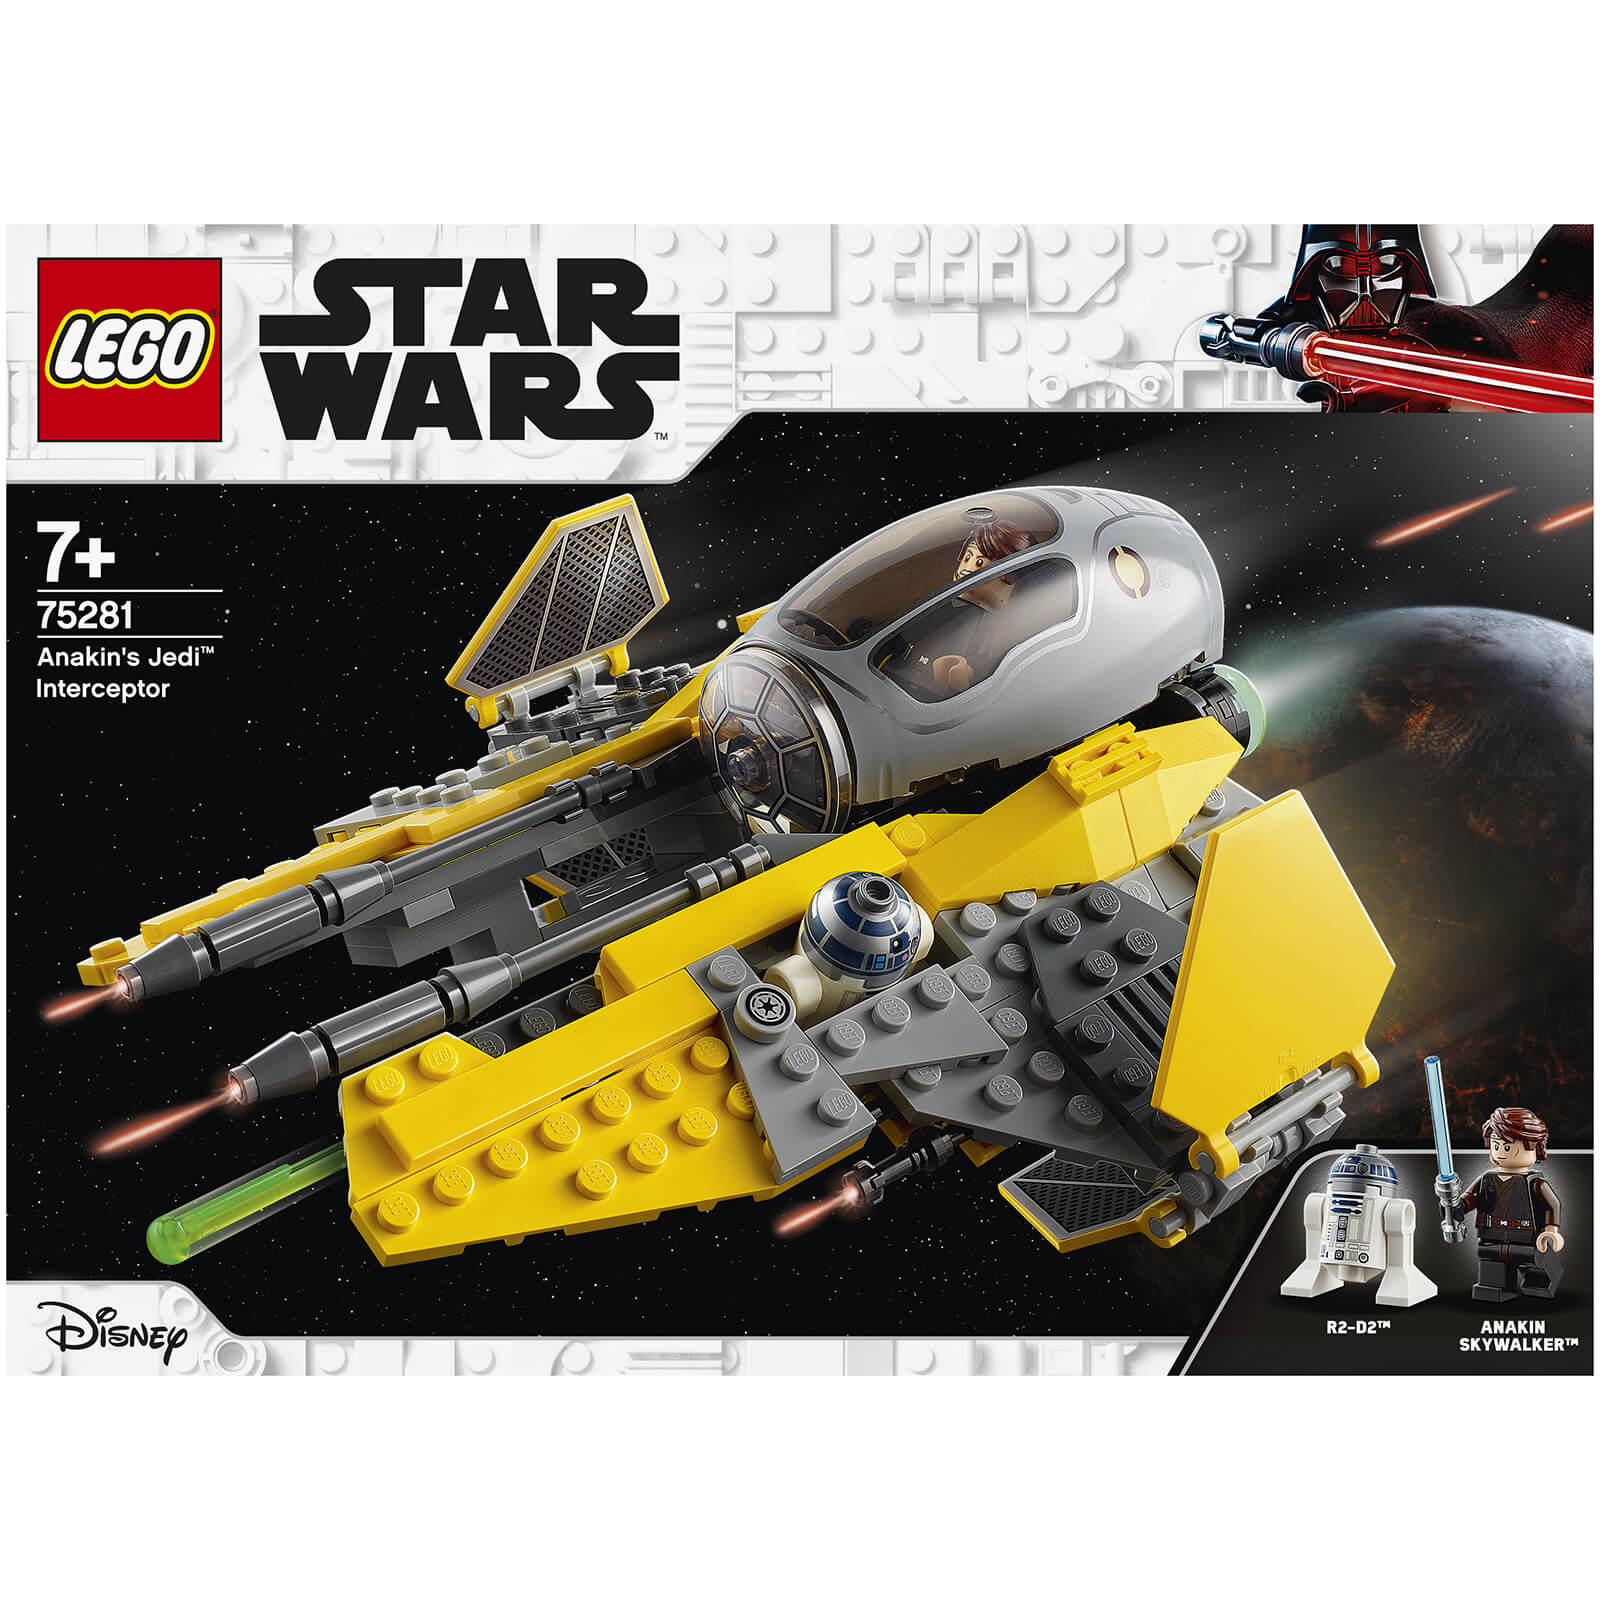 LEGO Star Wars: Anakin's Jedi Interceptor Toy (75281)